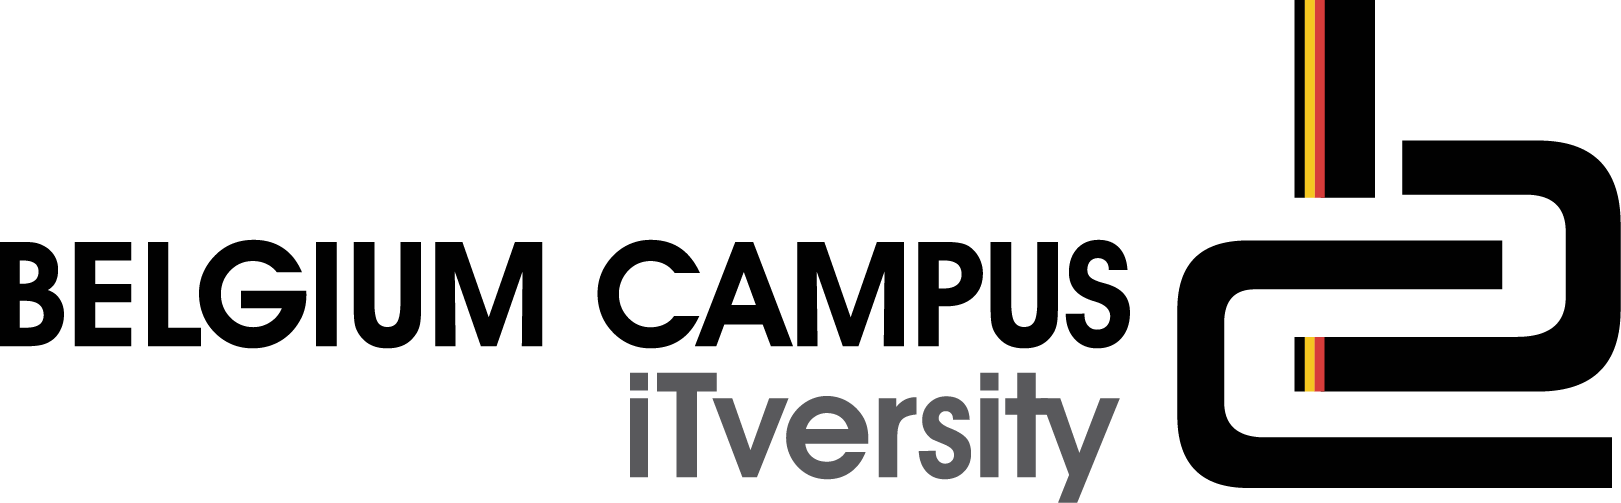 Belgium Campus iTversity